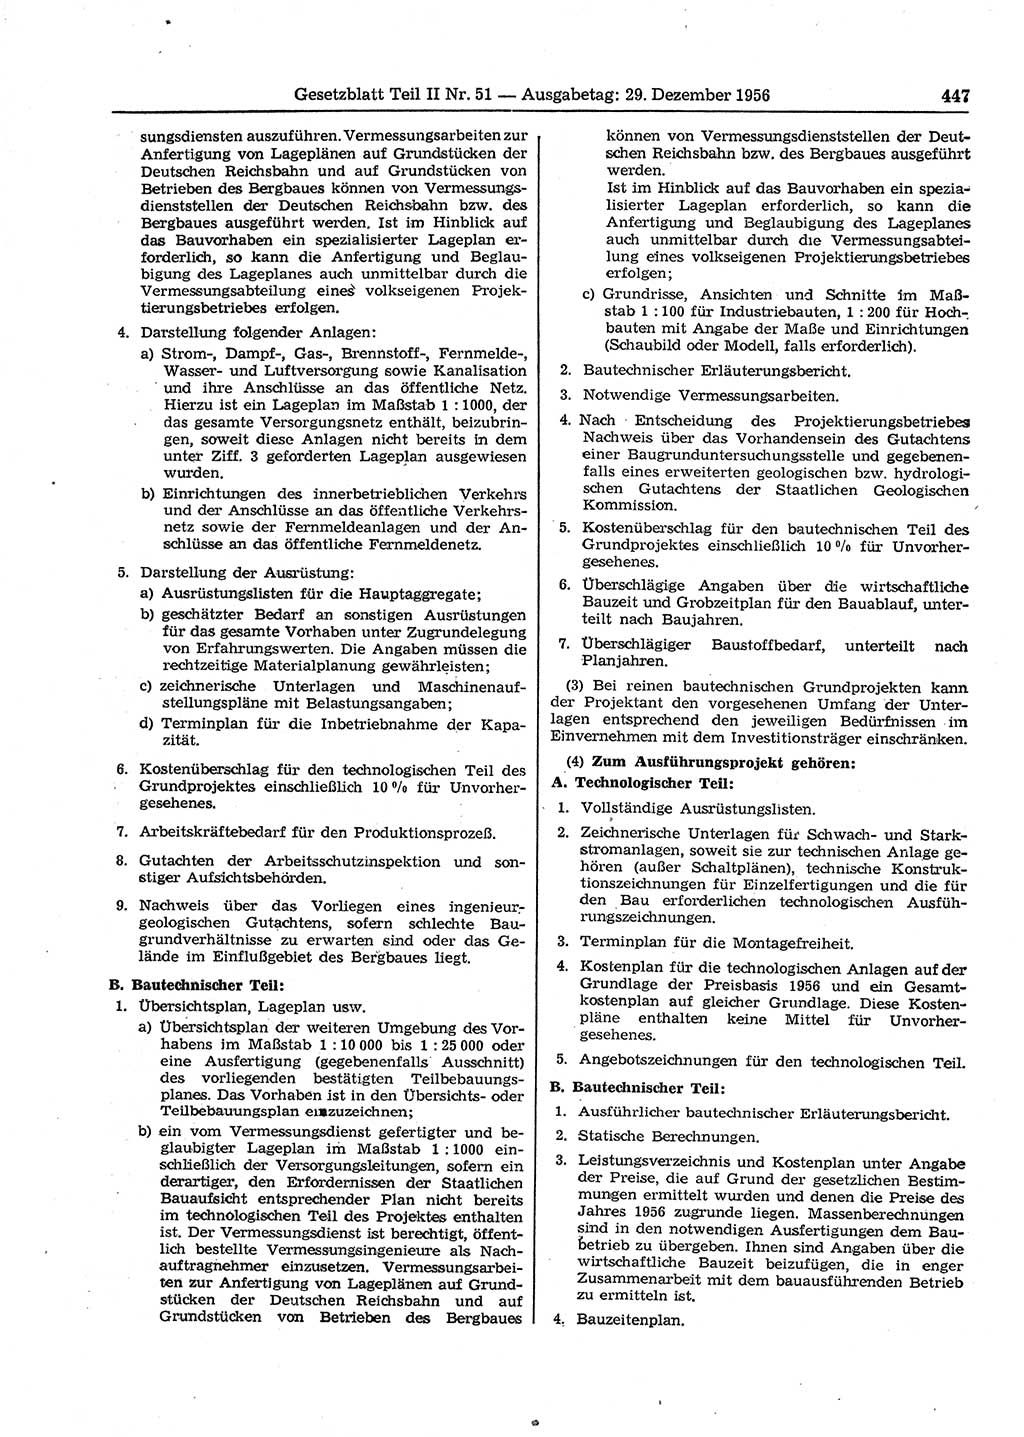 Gesetzblatt (GBl.) der Deutschen Demokratischen Republik (DDR) Teil ⅠⅠ 1956, Seite 447 (GBl. DDR ⅠⅠ 1956, S. 447)